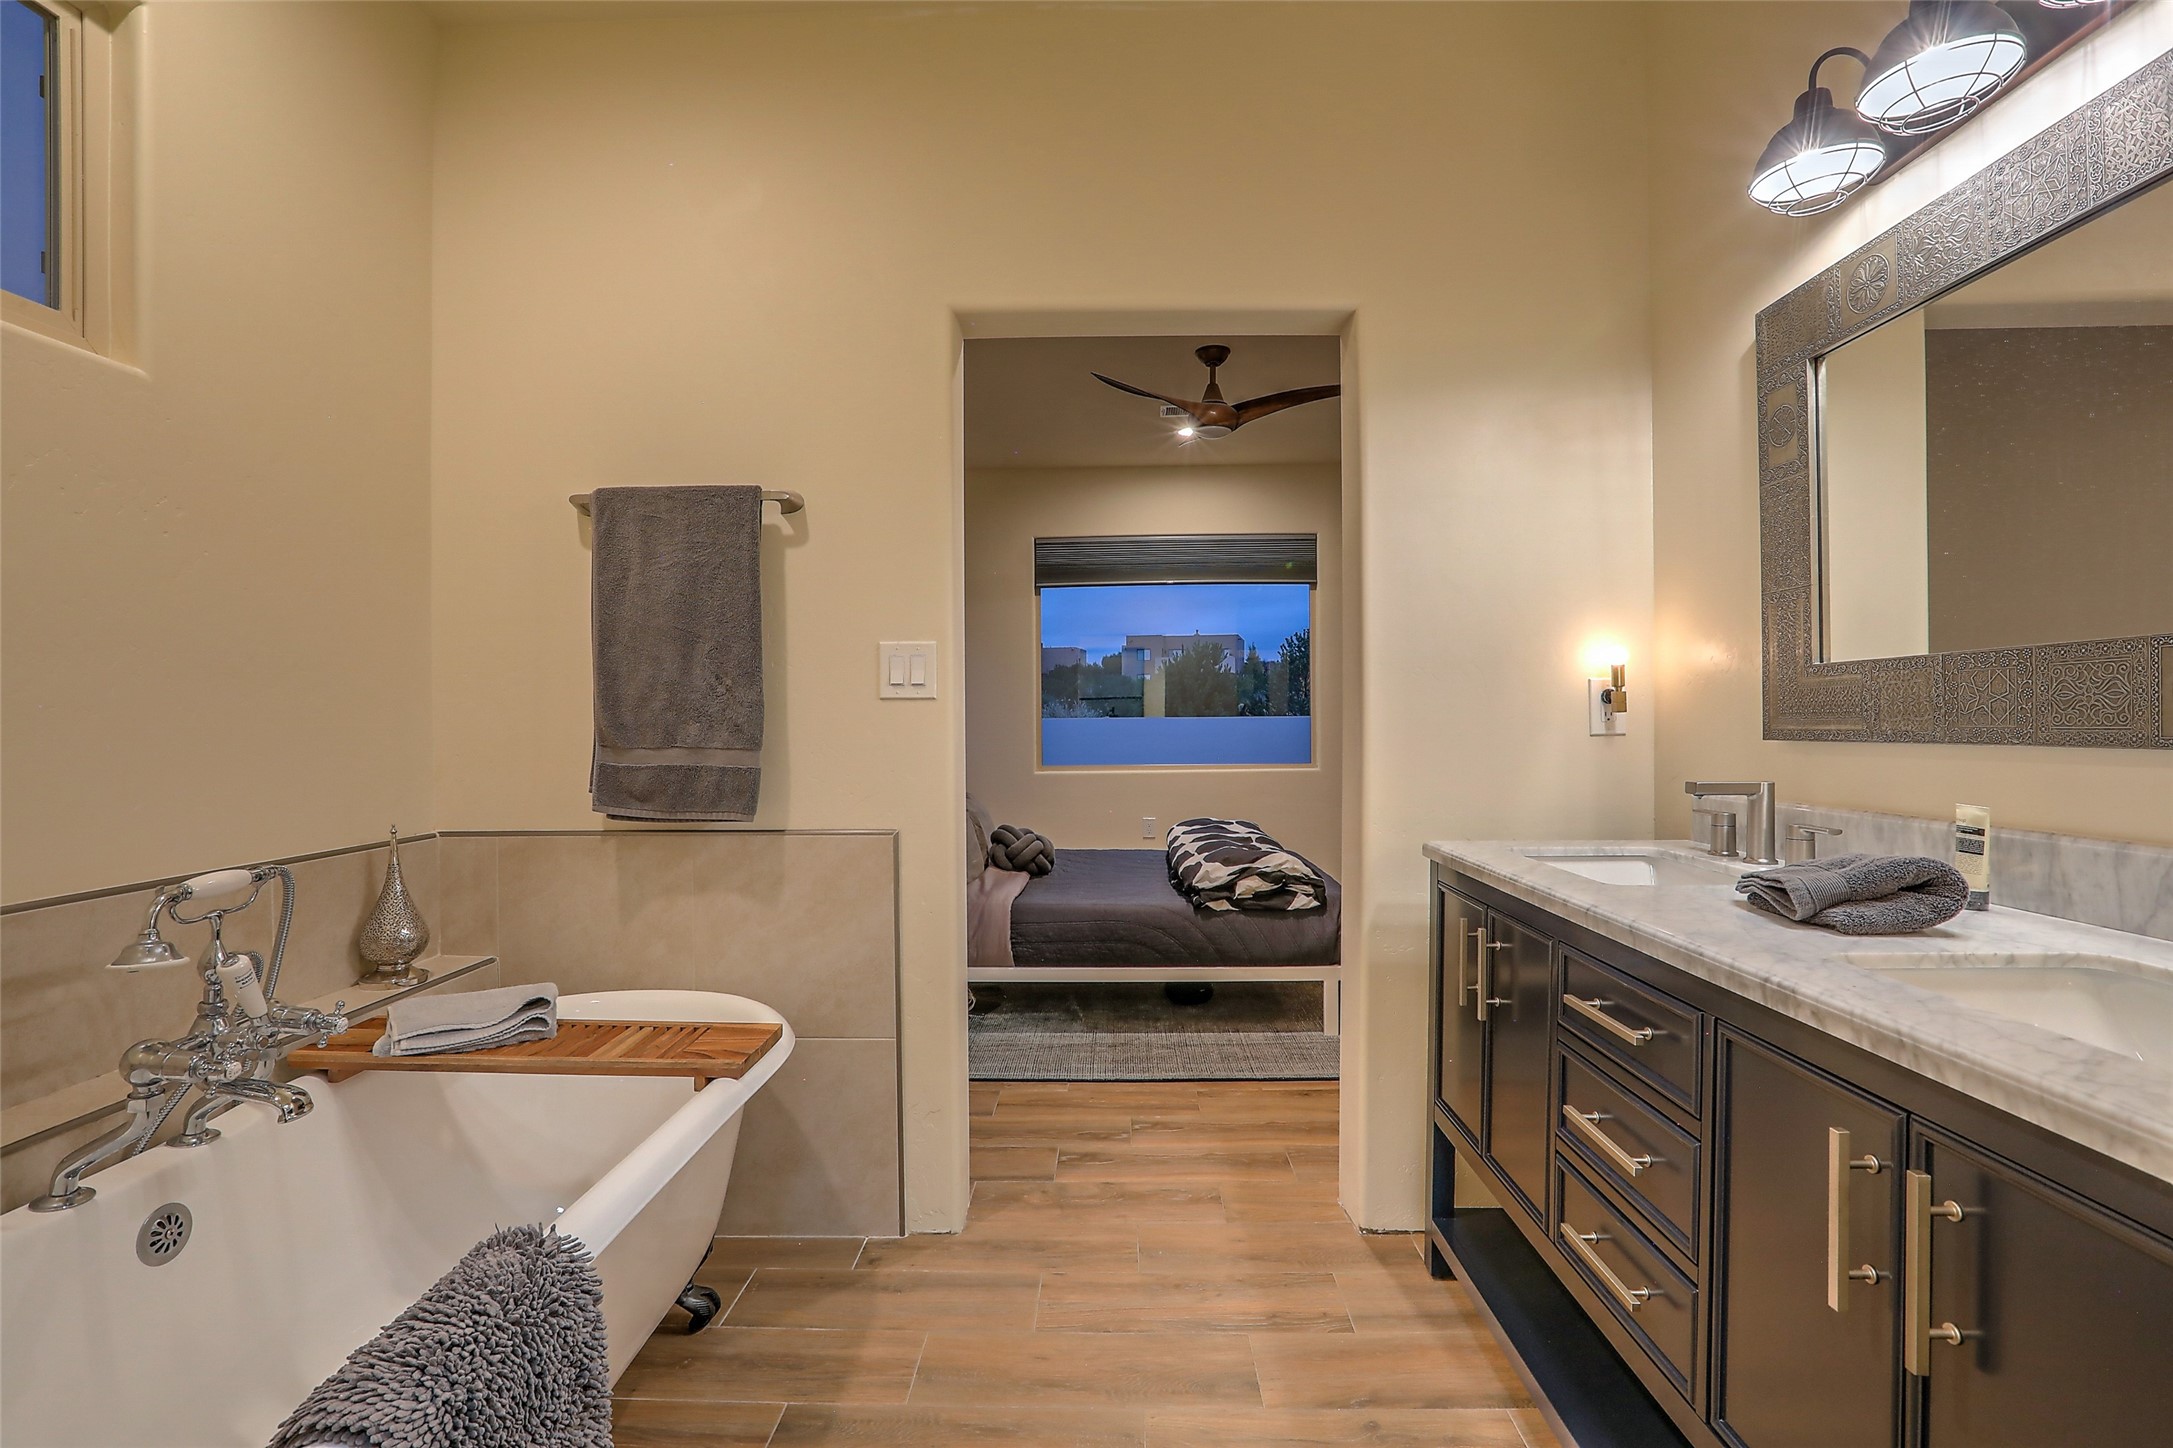 2 Via Quinta, Santa Fe, New Mexico 87507, 3 Bedrooms Bedrooms, ,2 BathroomsBathrooms,Residential,For Sale,2 Via Quinta,202334796